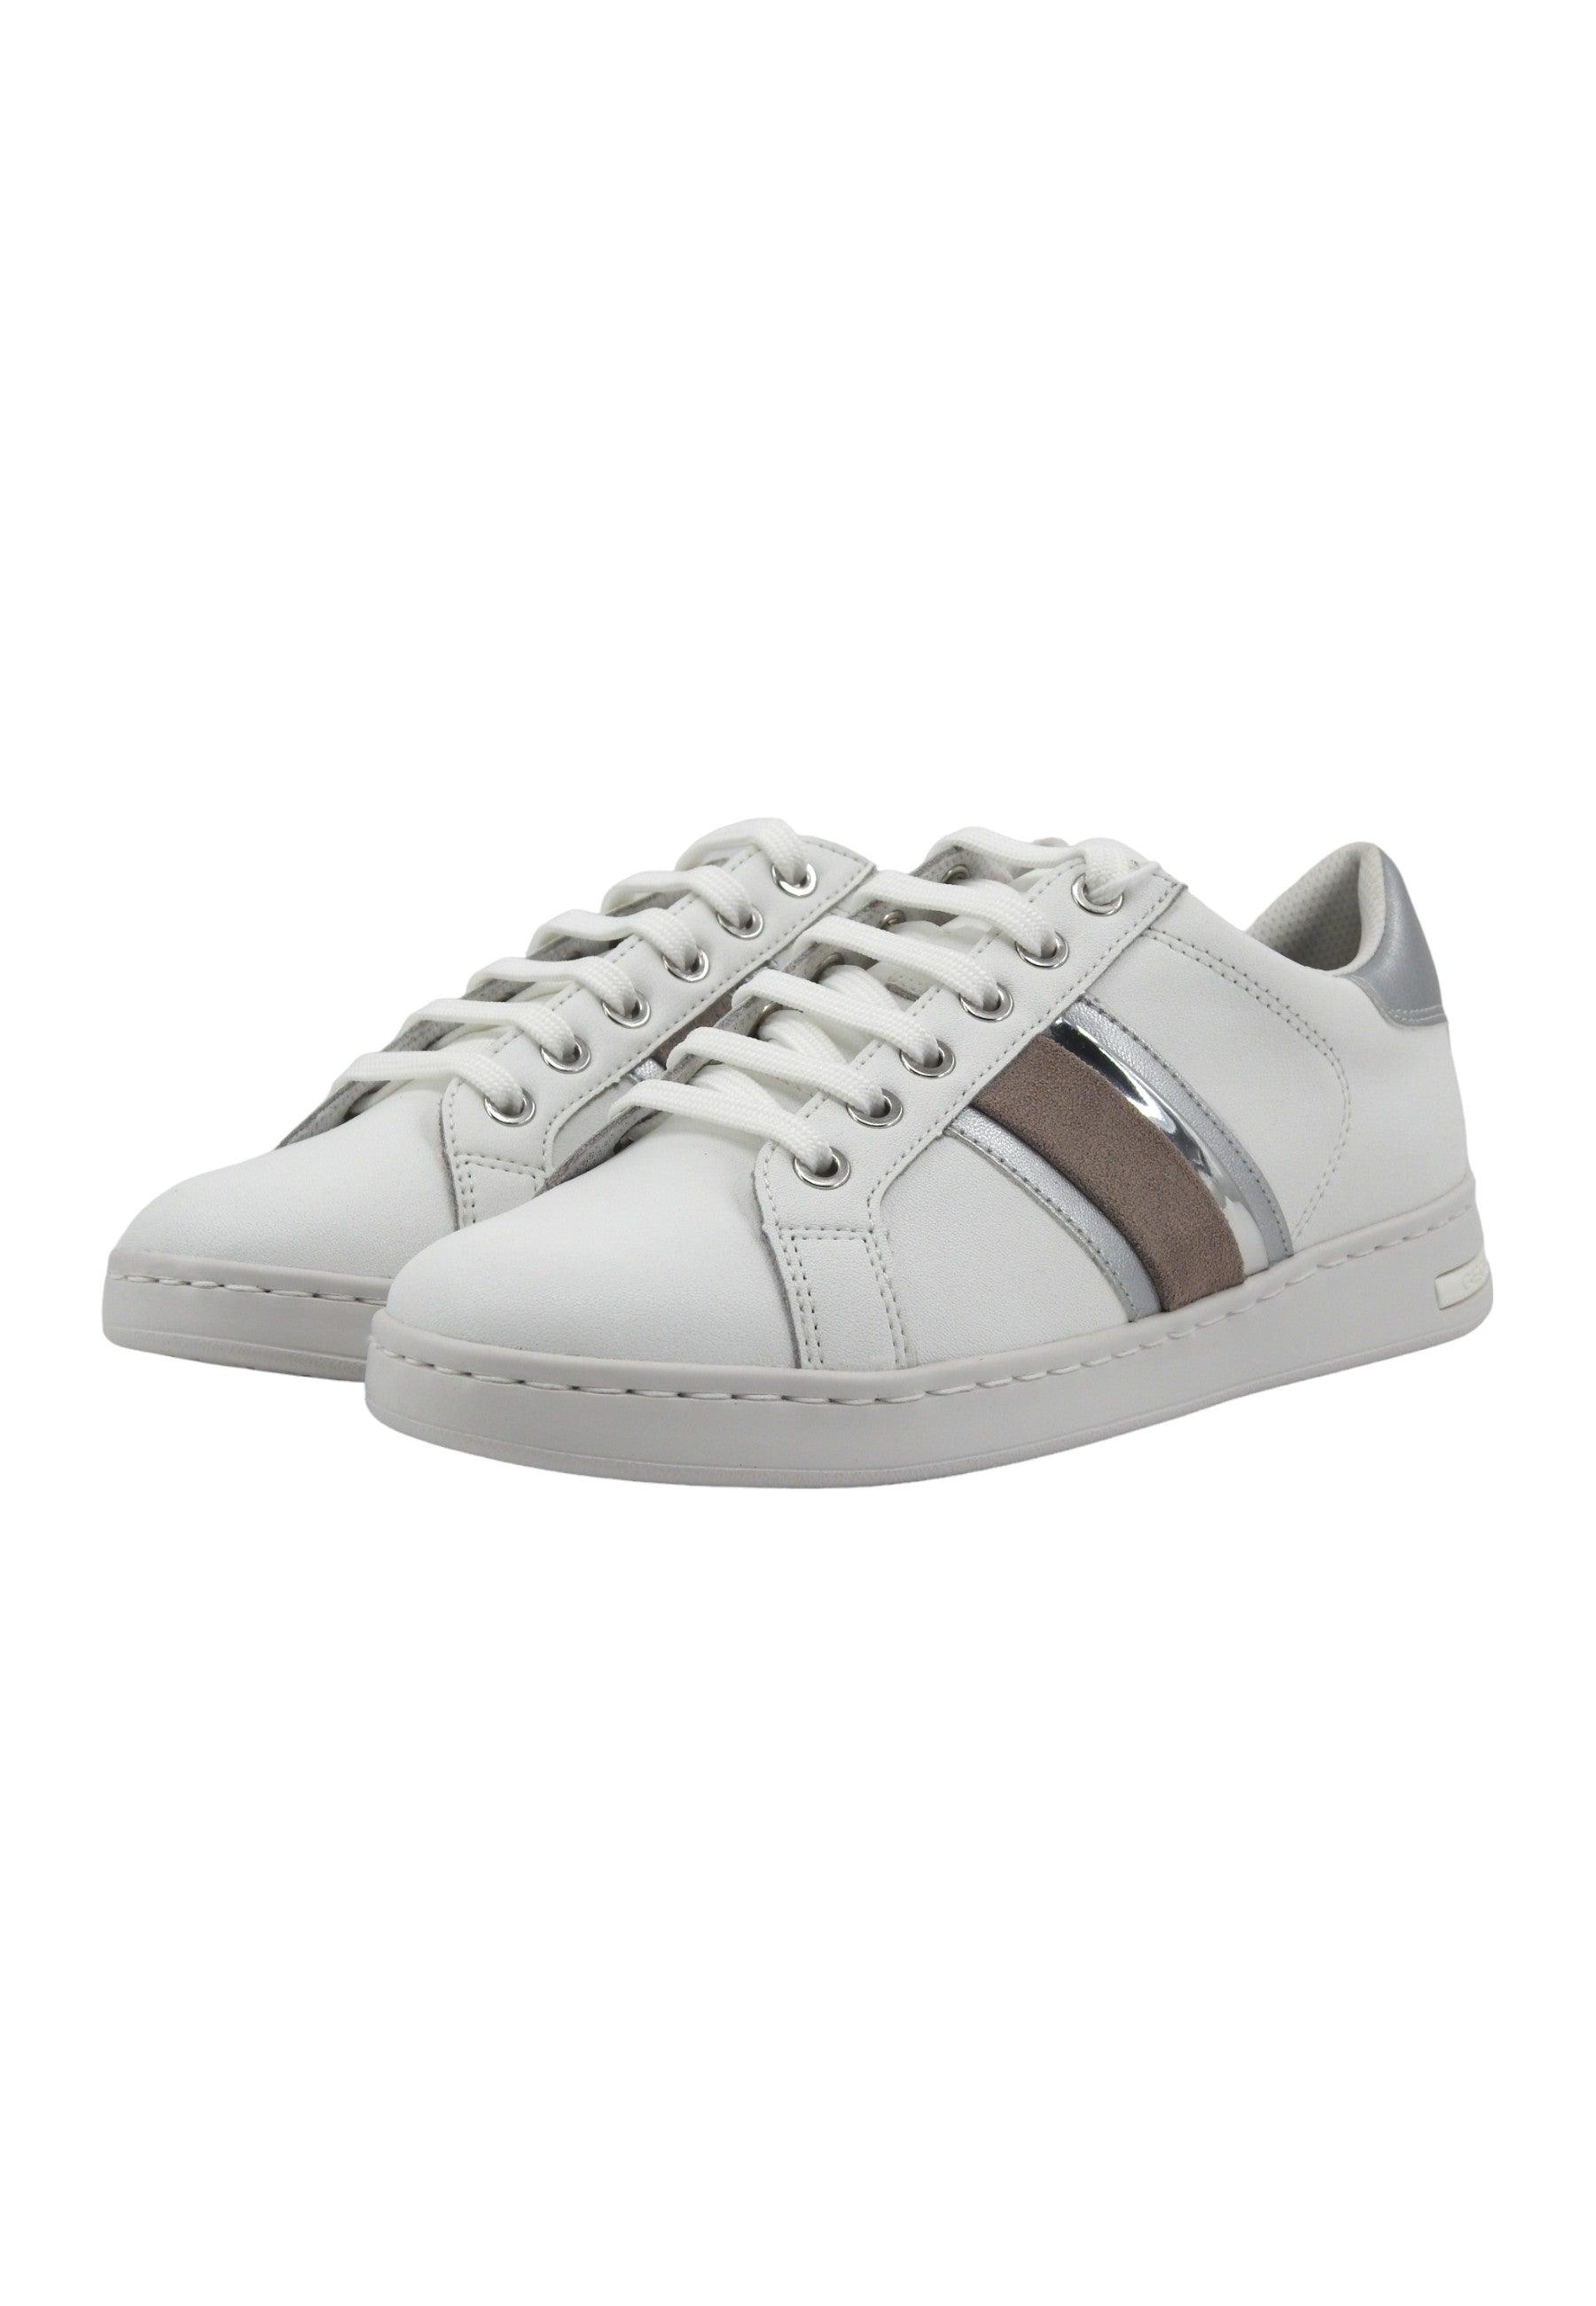 GEOX Jaysen Sneaker Donna White Silver D361BE085NFC0007 - Sandrini Calzature e Abbigliamento